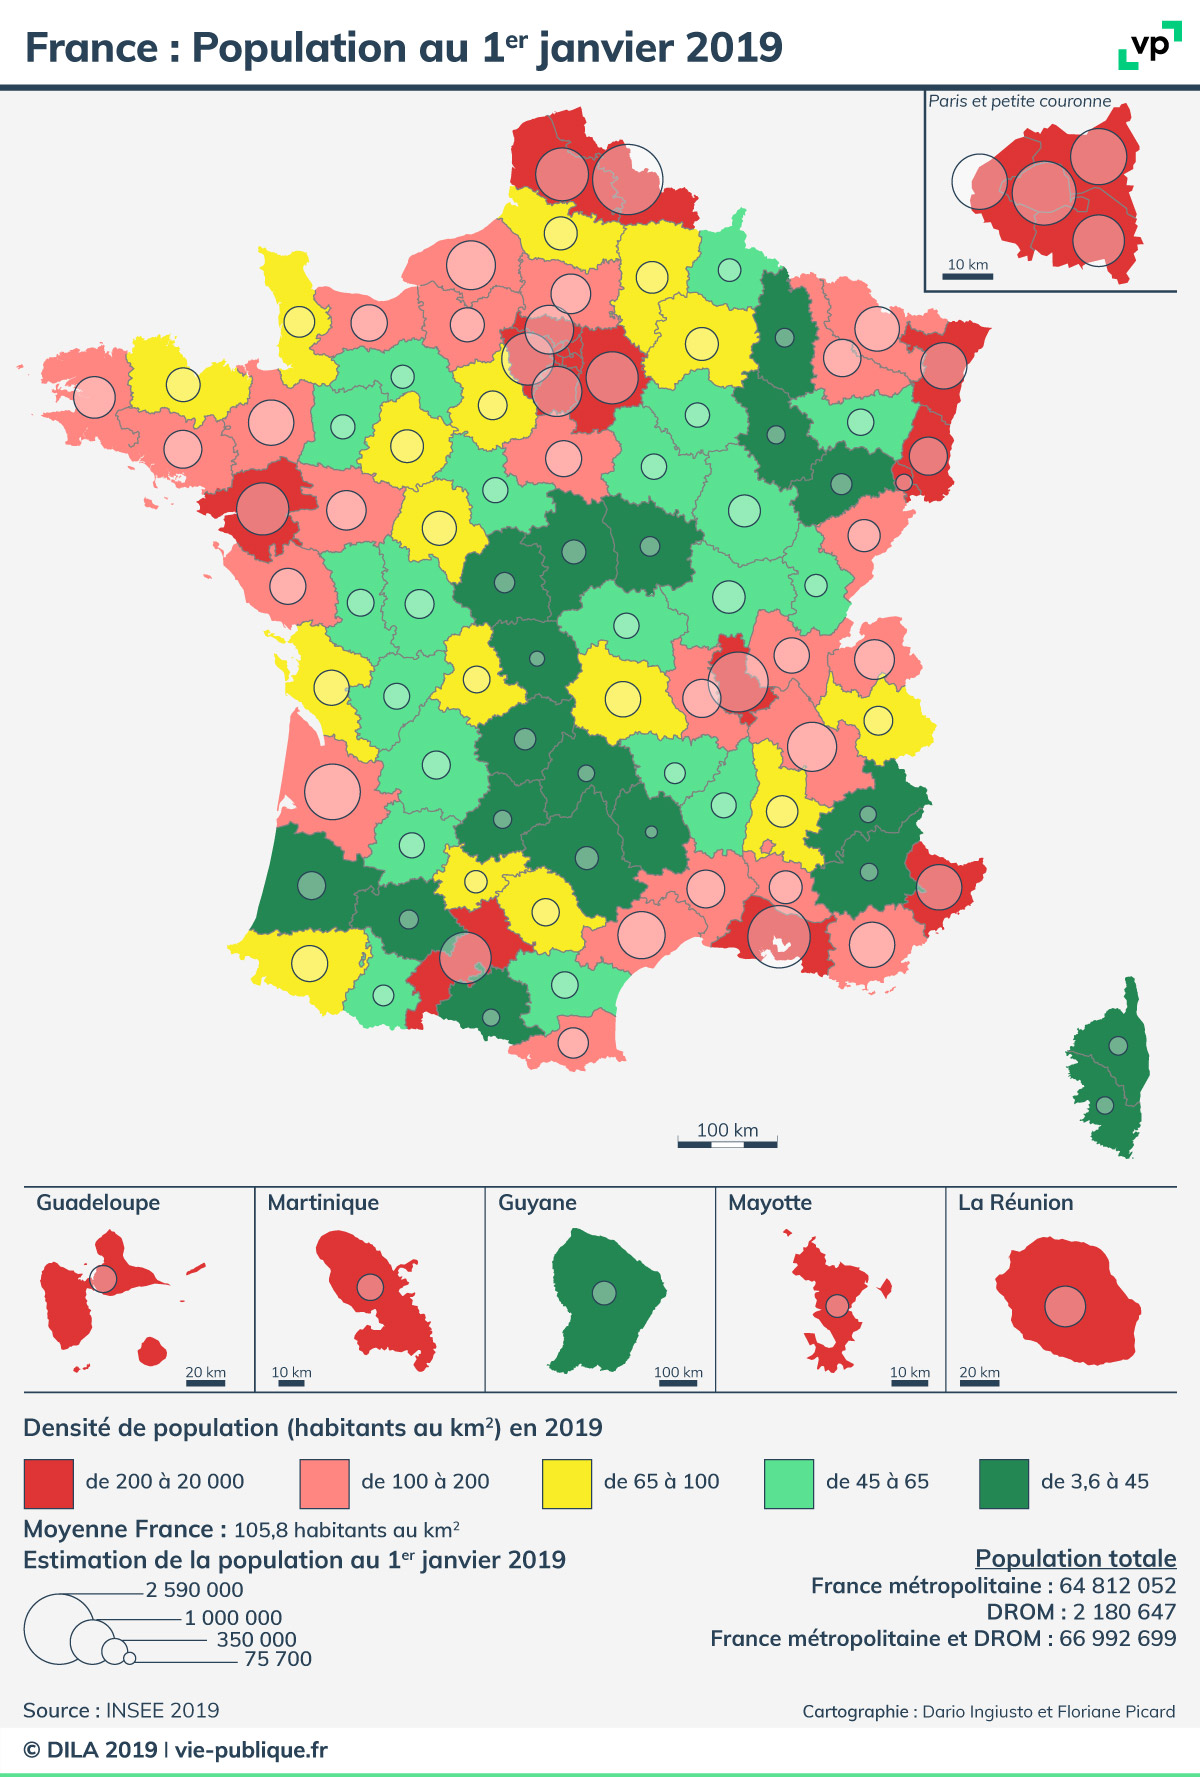 France_Population.jpg